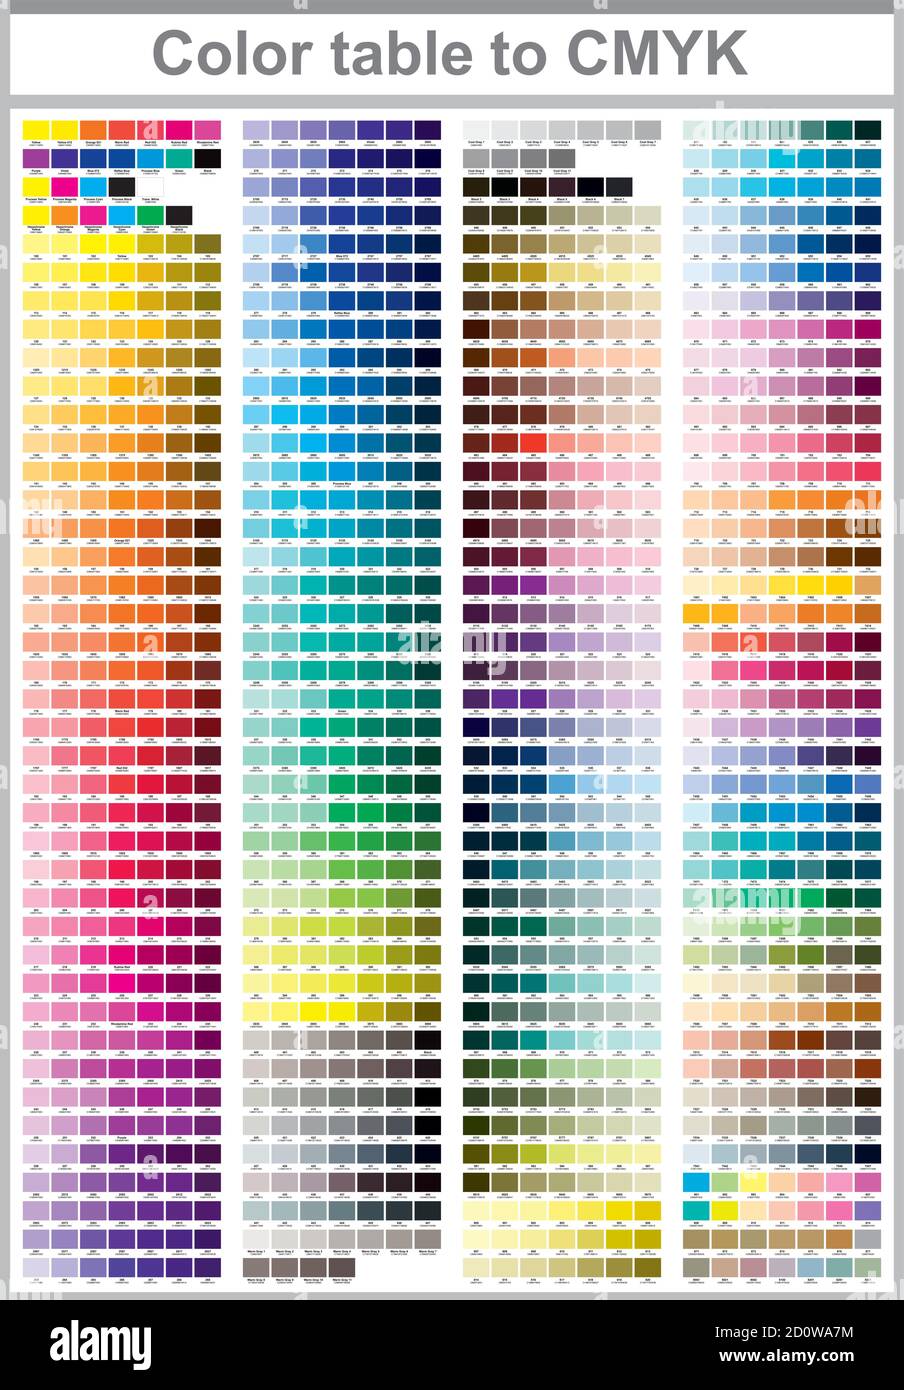 Tabella colori da Pantone a CMYK. Stampa a colori della pagina di prova.  Immagine colori CMYK per la stampa. Tavolozza dei colori vettoriali  Immagine e Vettoriale - Alamy